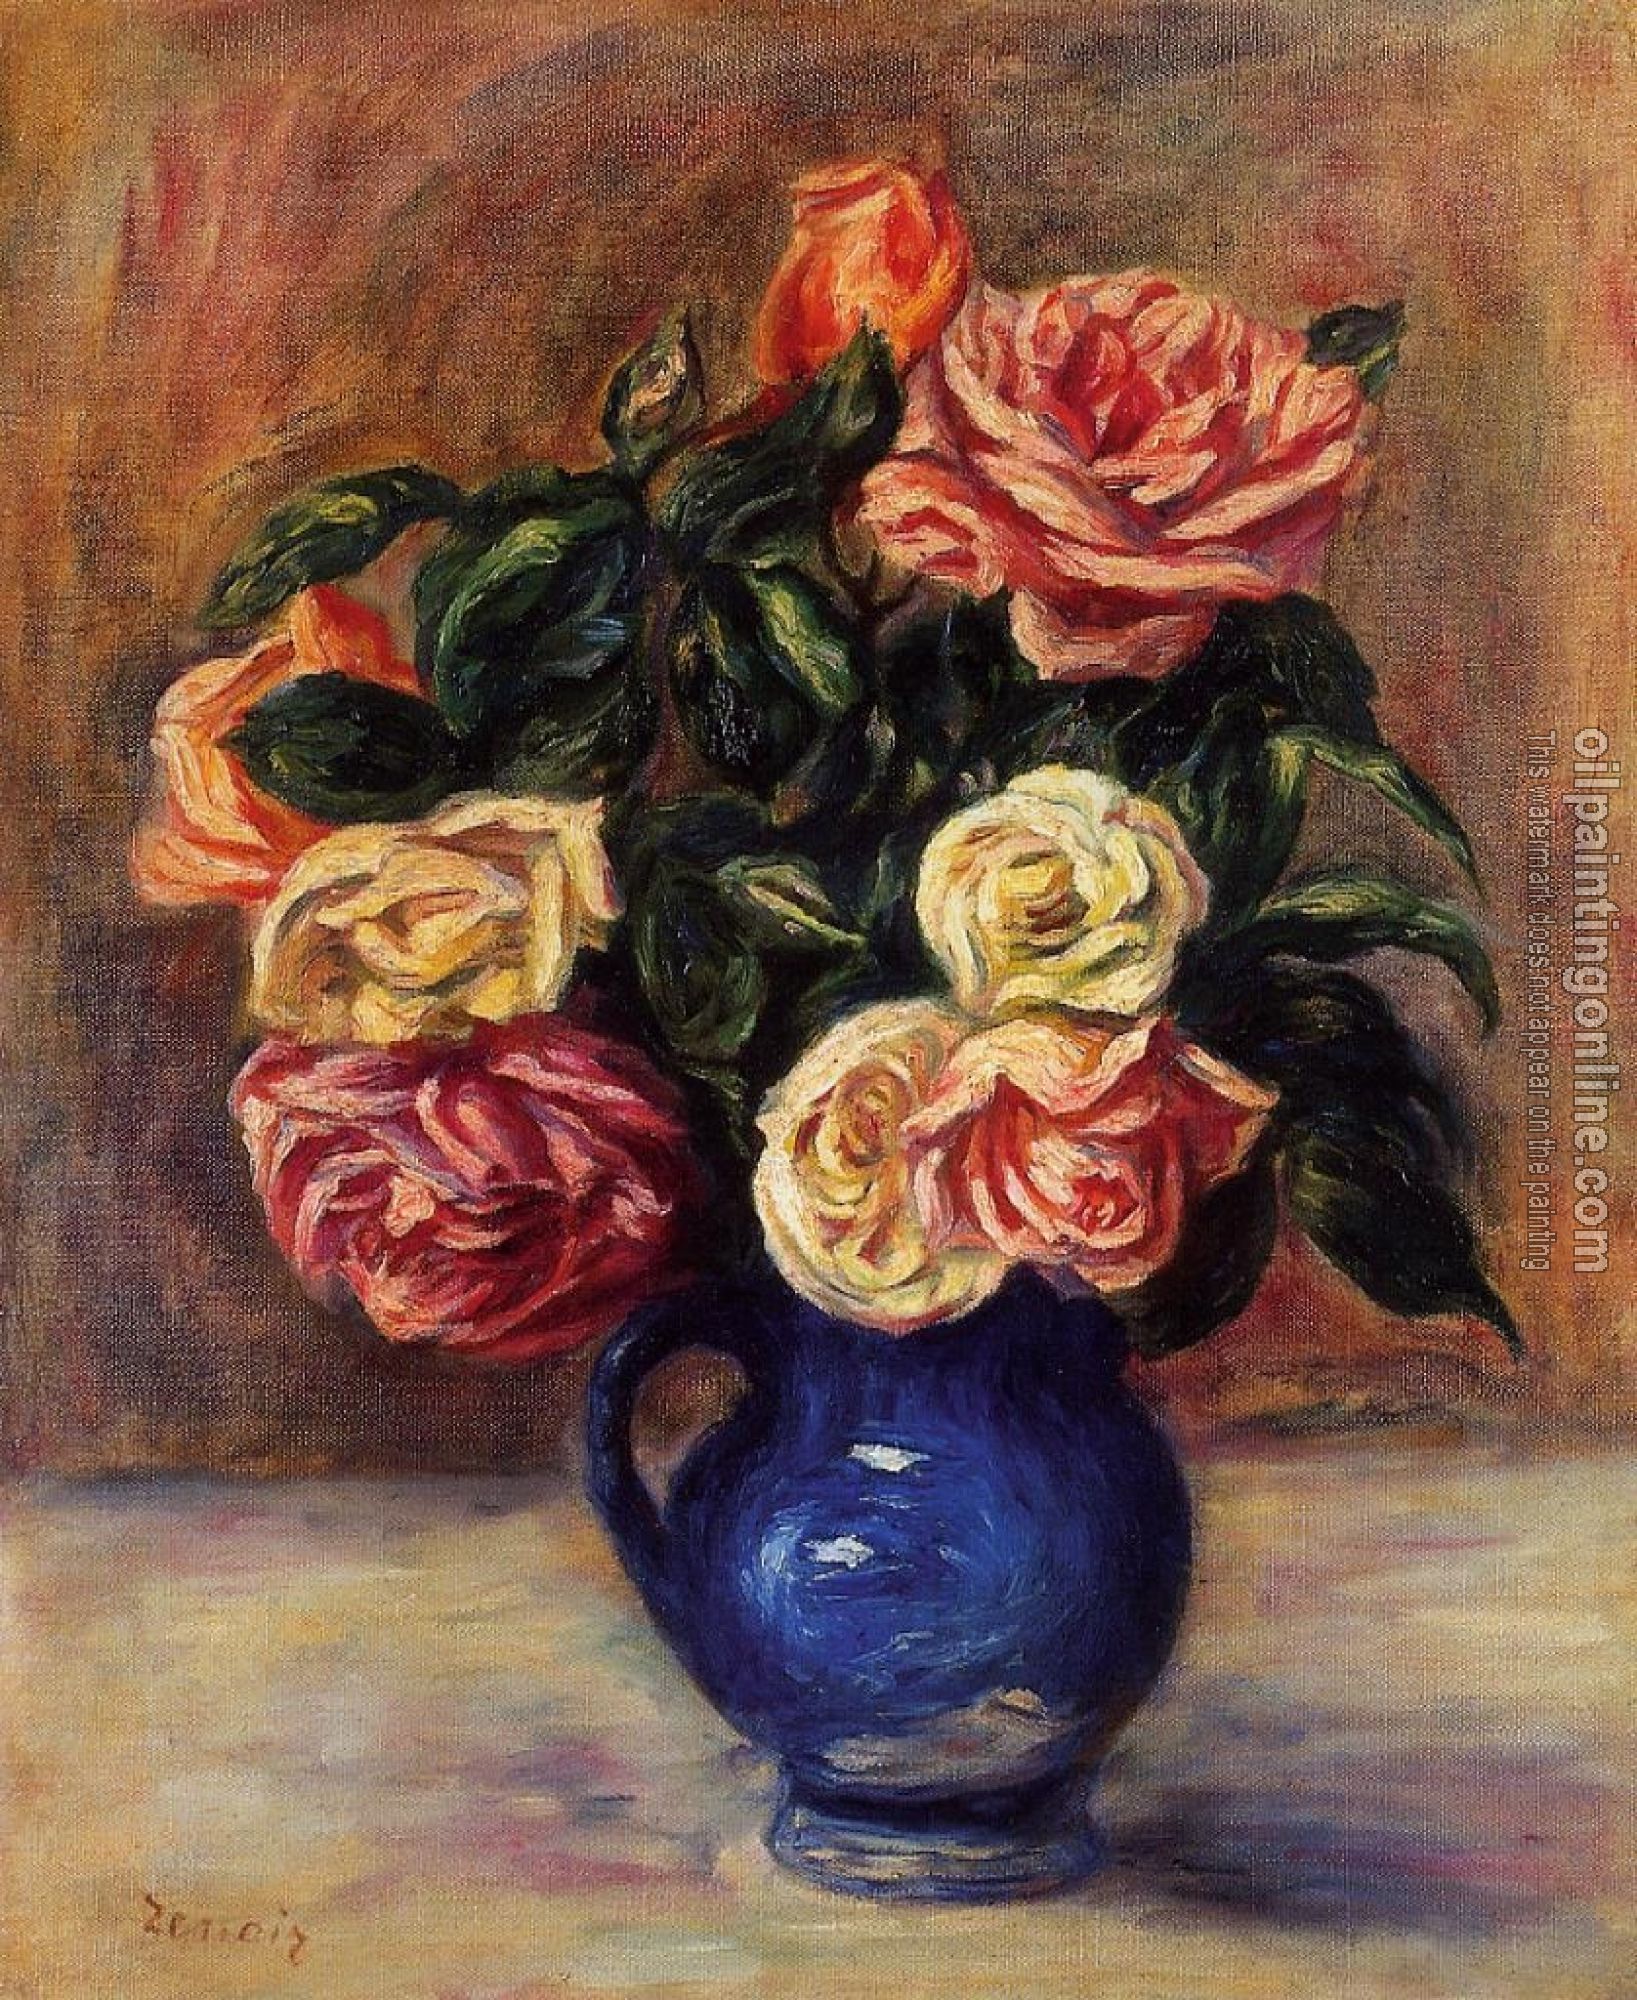 Renoir, Pierre Auguste - Roses in a Blue Vase